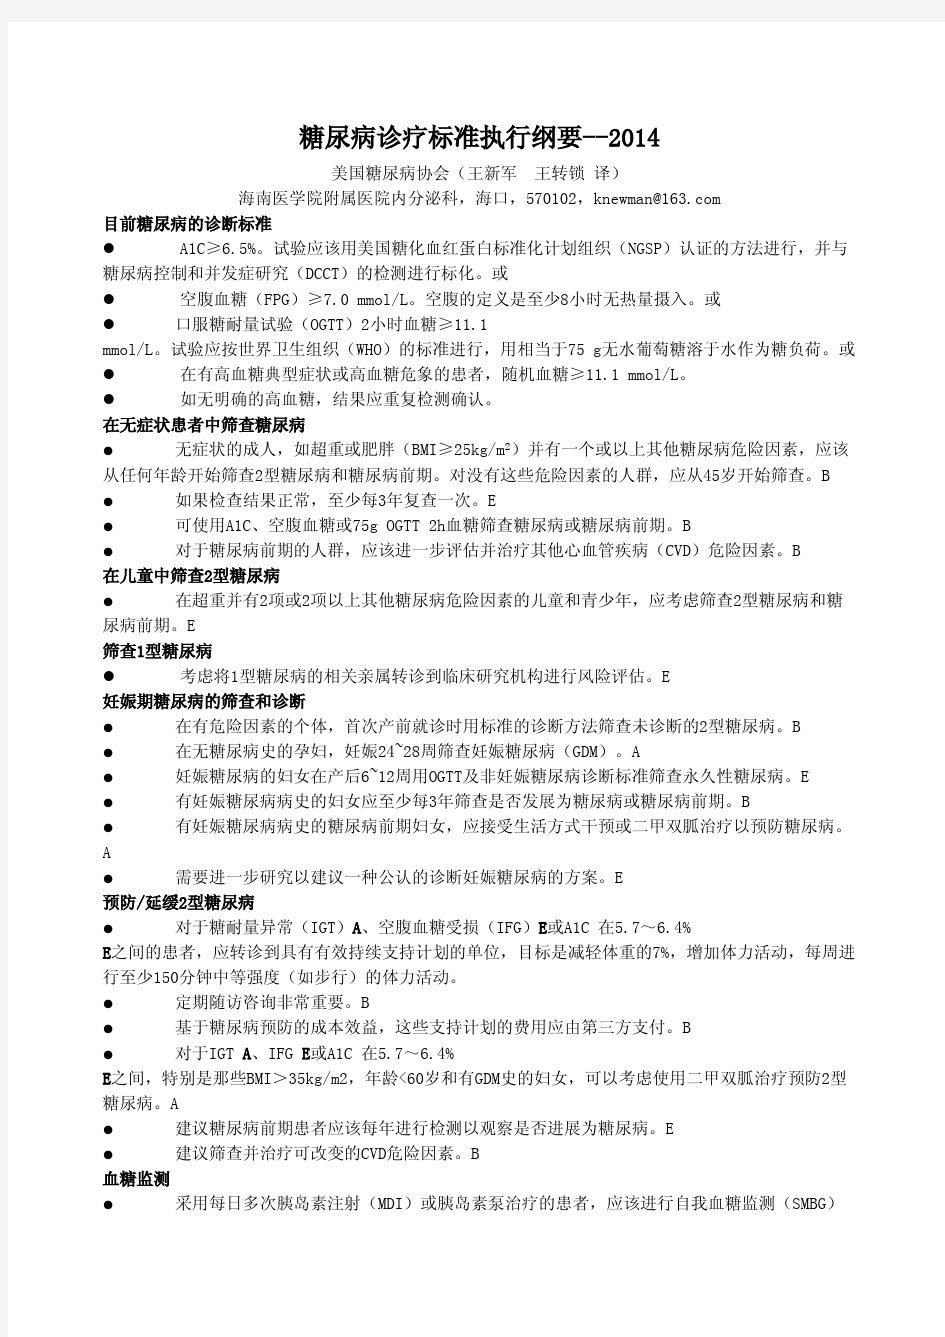 2014年ADA糖尿病诊疗指南(中文版)